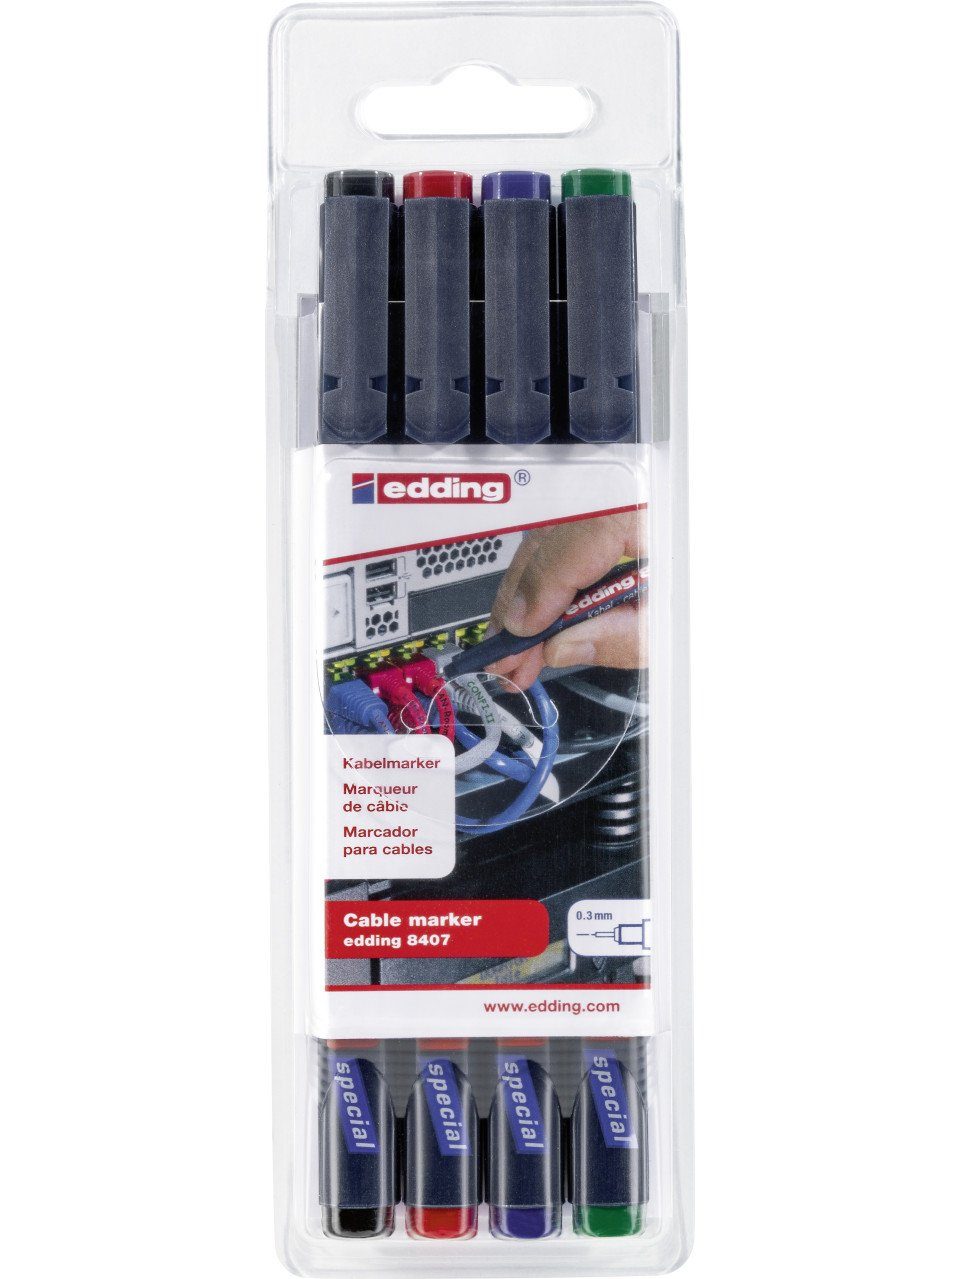 edding Marker edding 8407 Kabelmarker Set schwarz, rot, blau und